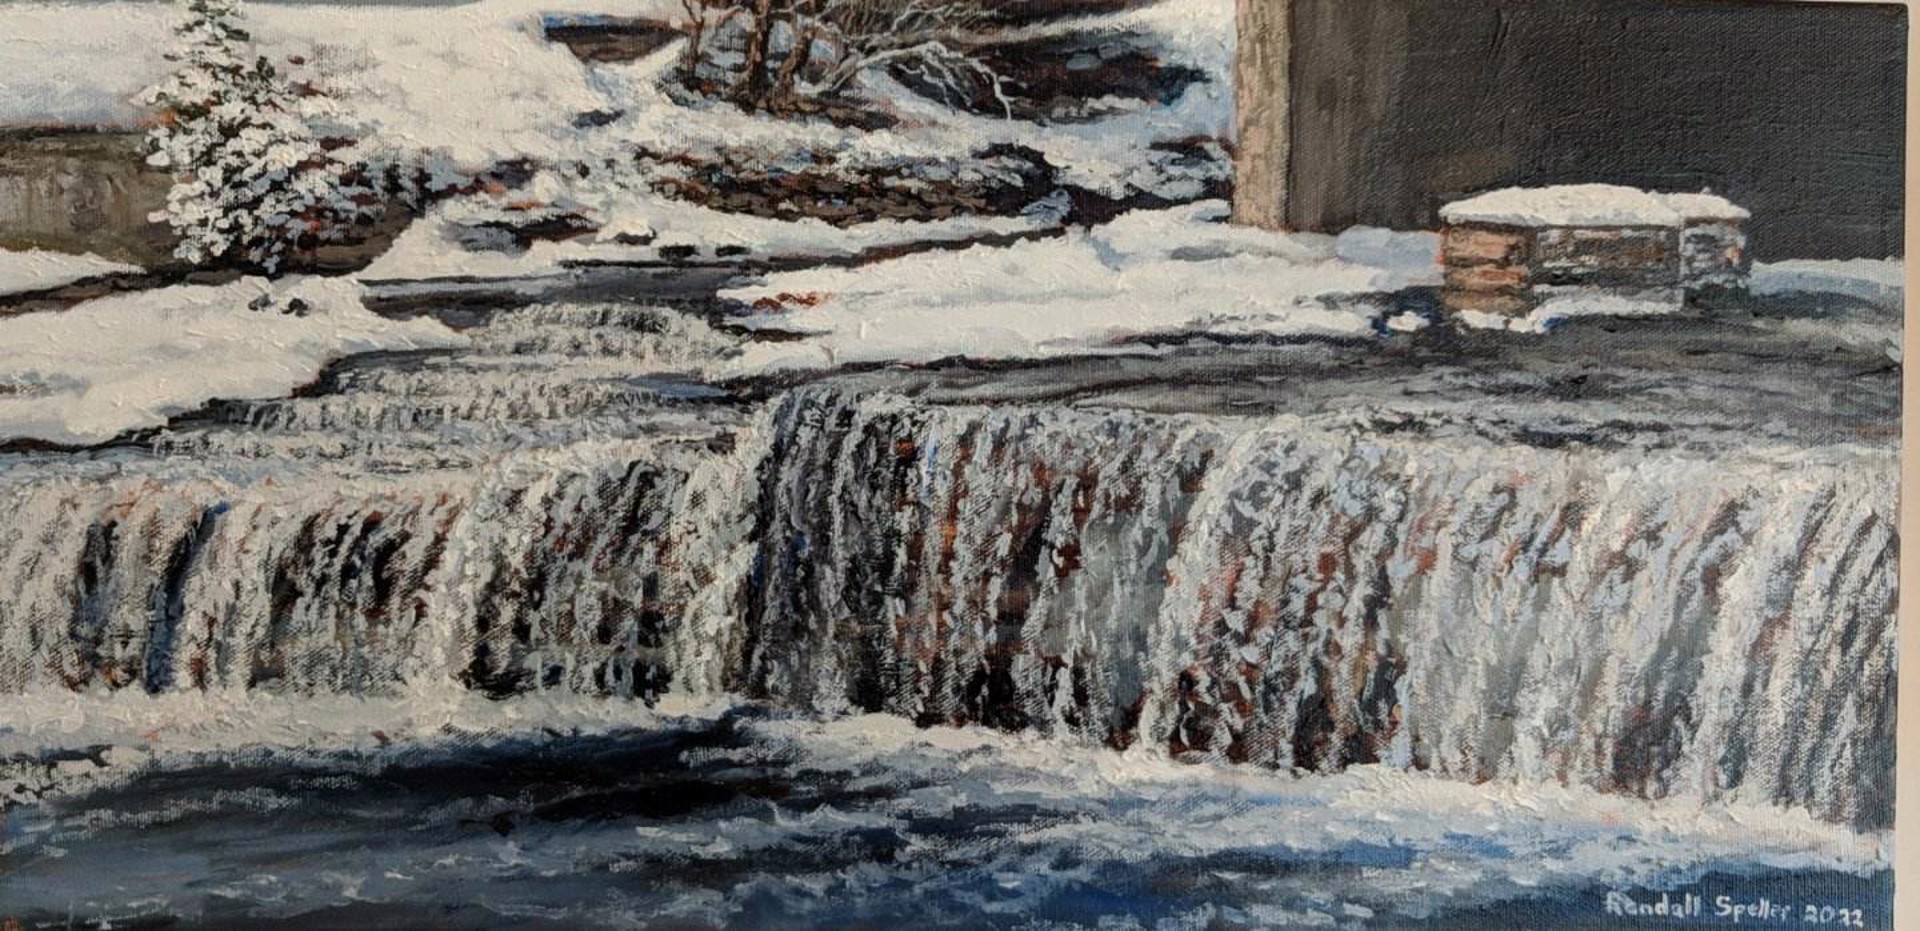 Falls in Winter by Randall Speller